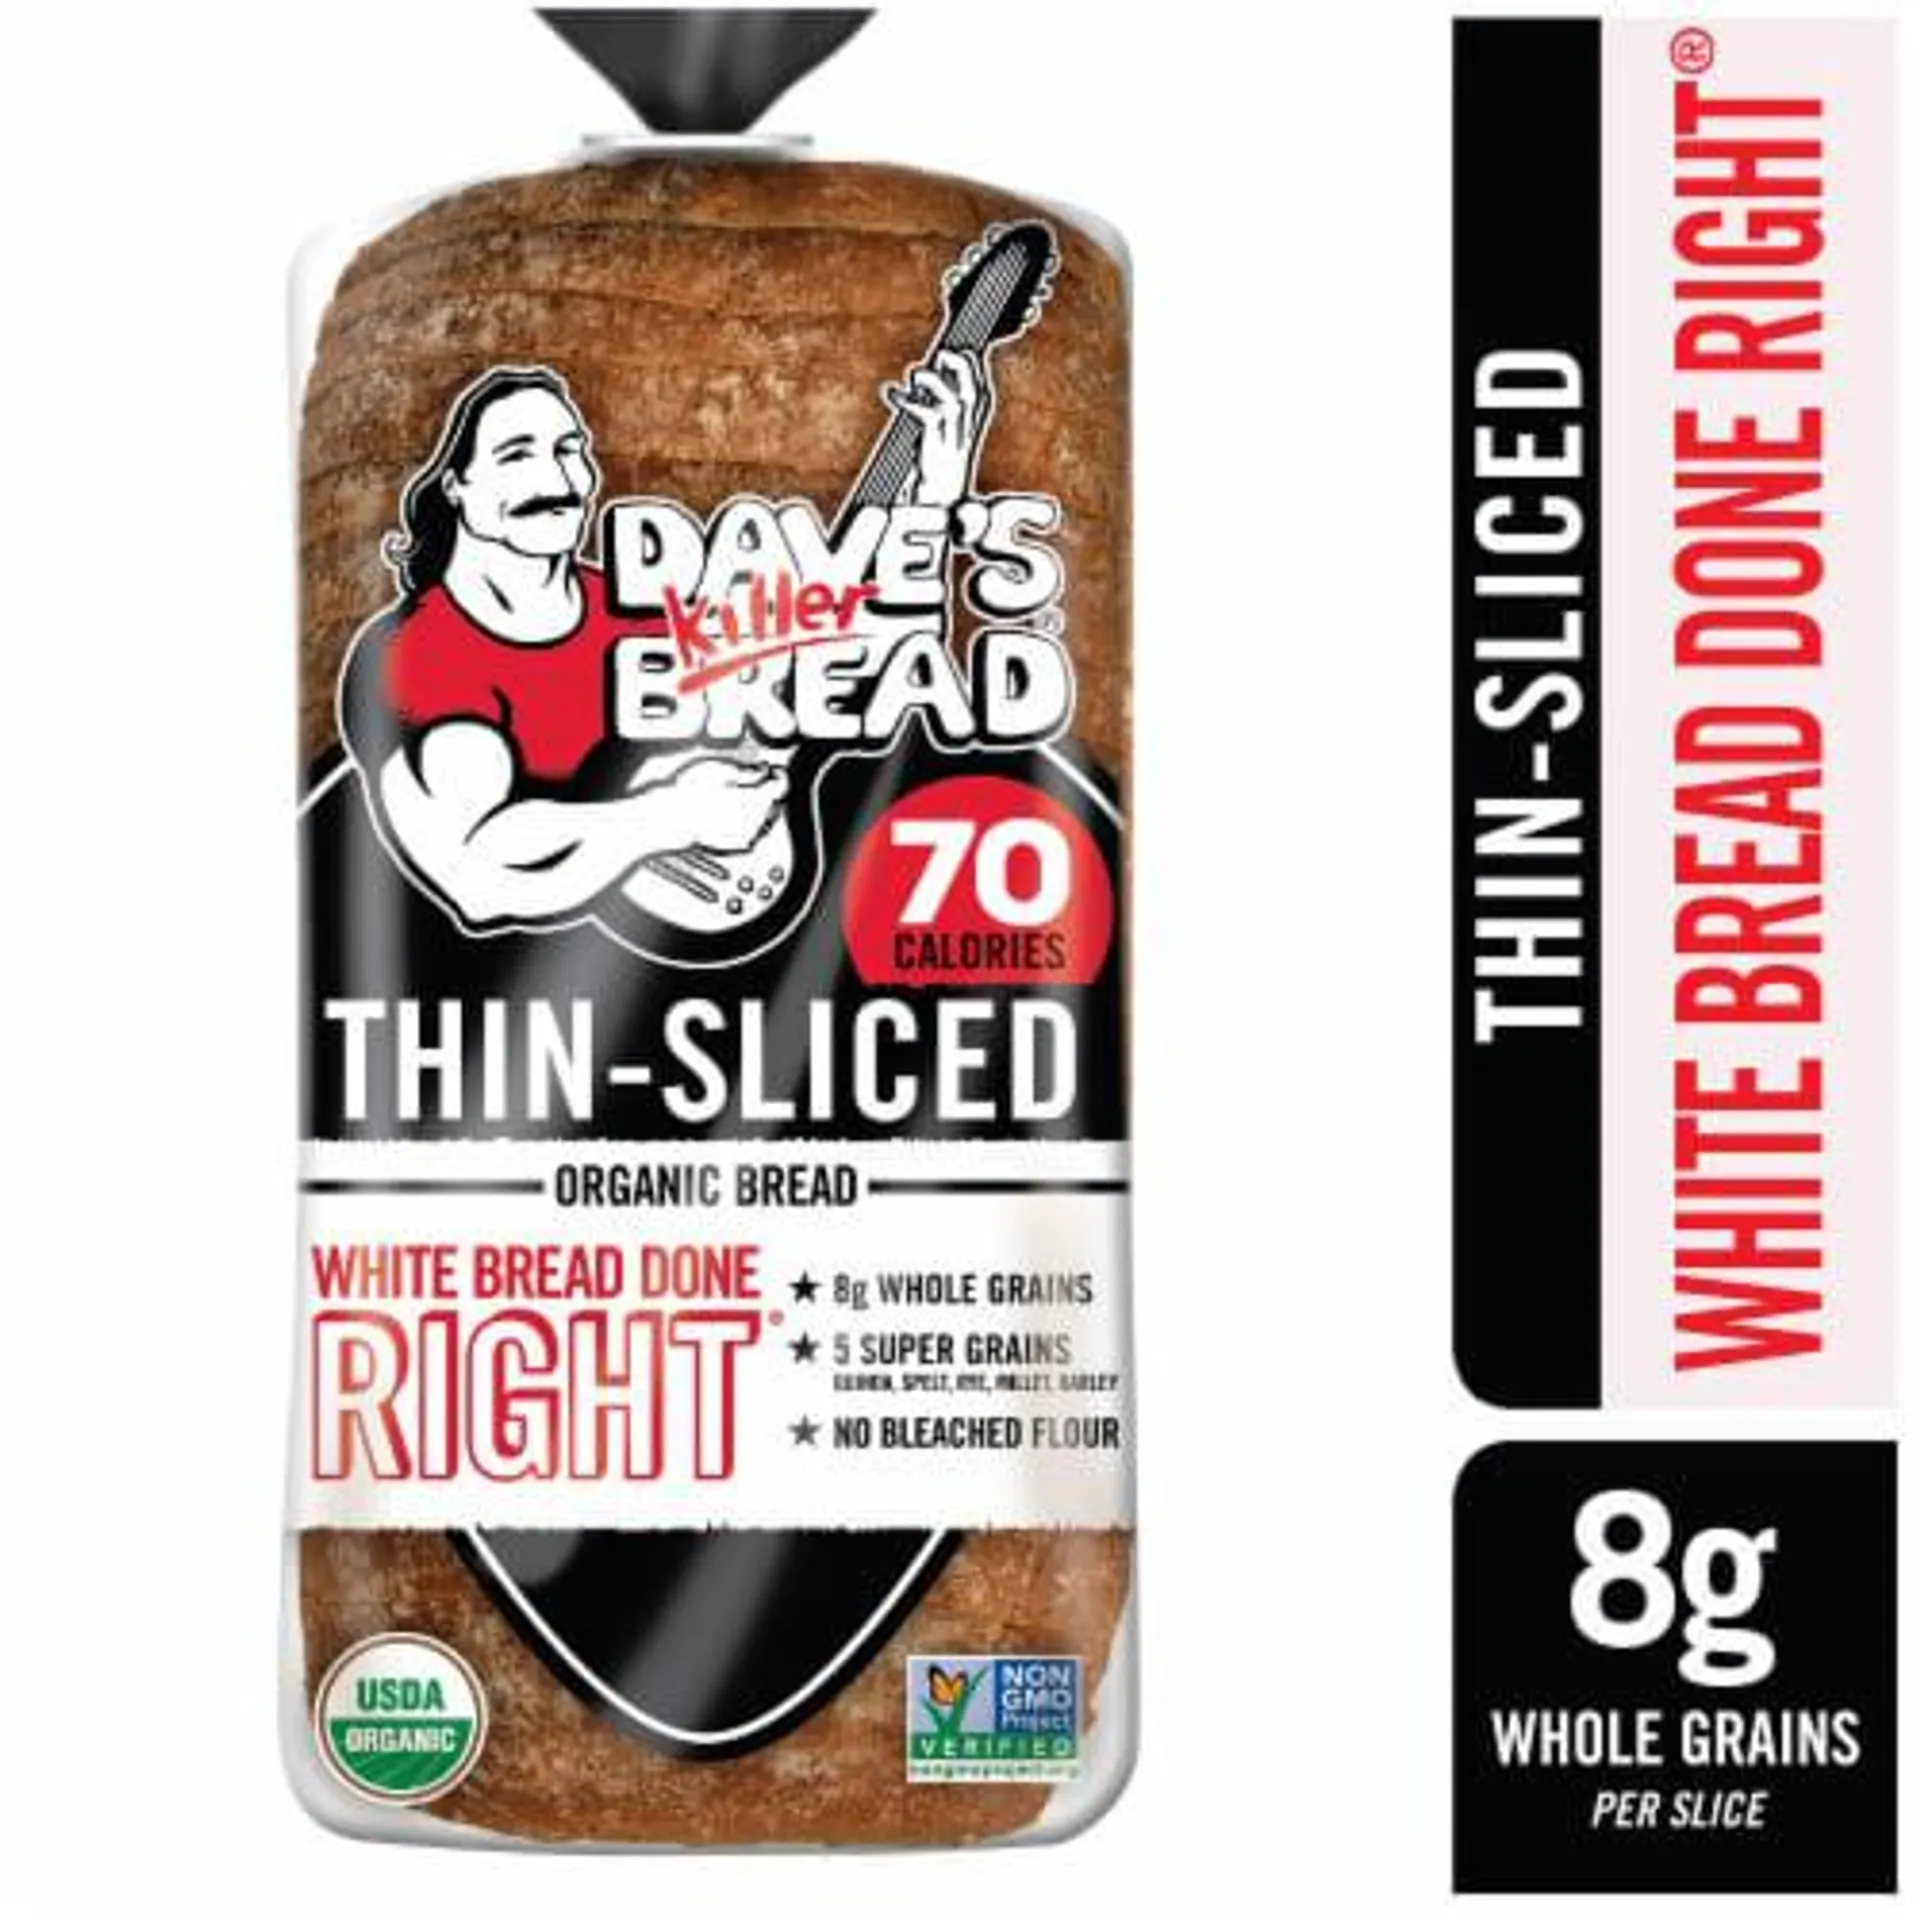 Dave's Killer Bread White Bread Done Right Thin-Sliced Organic White Bread